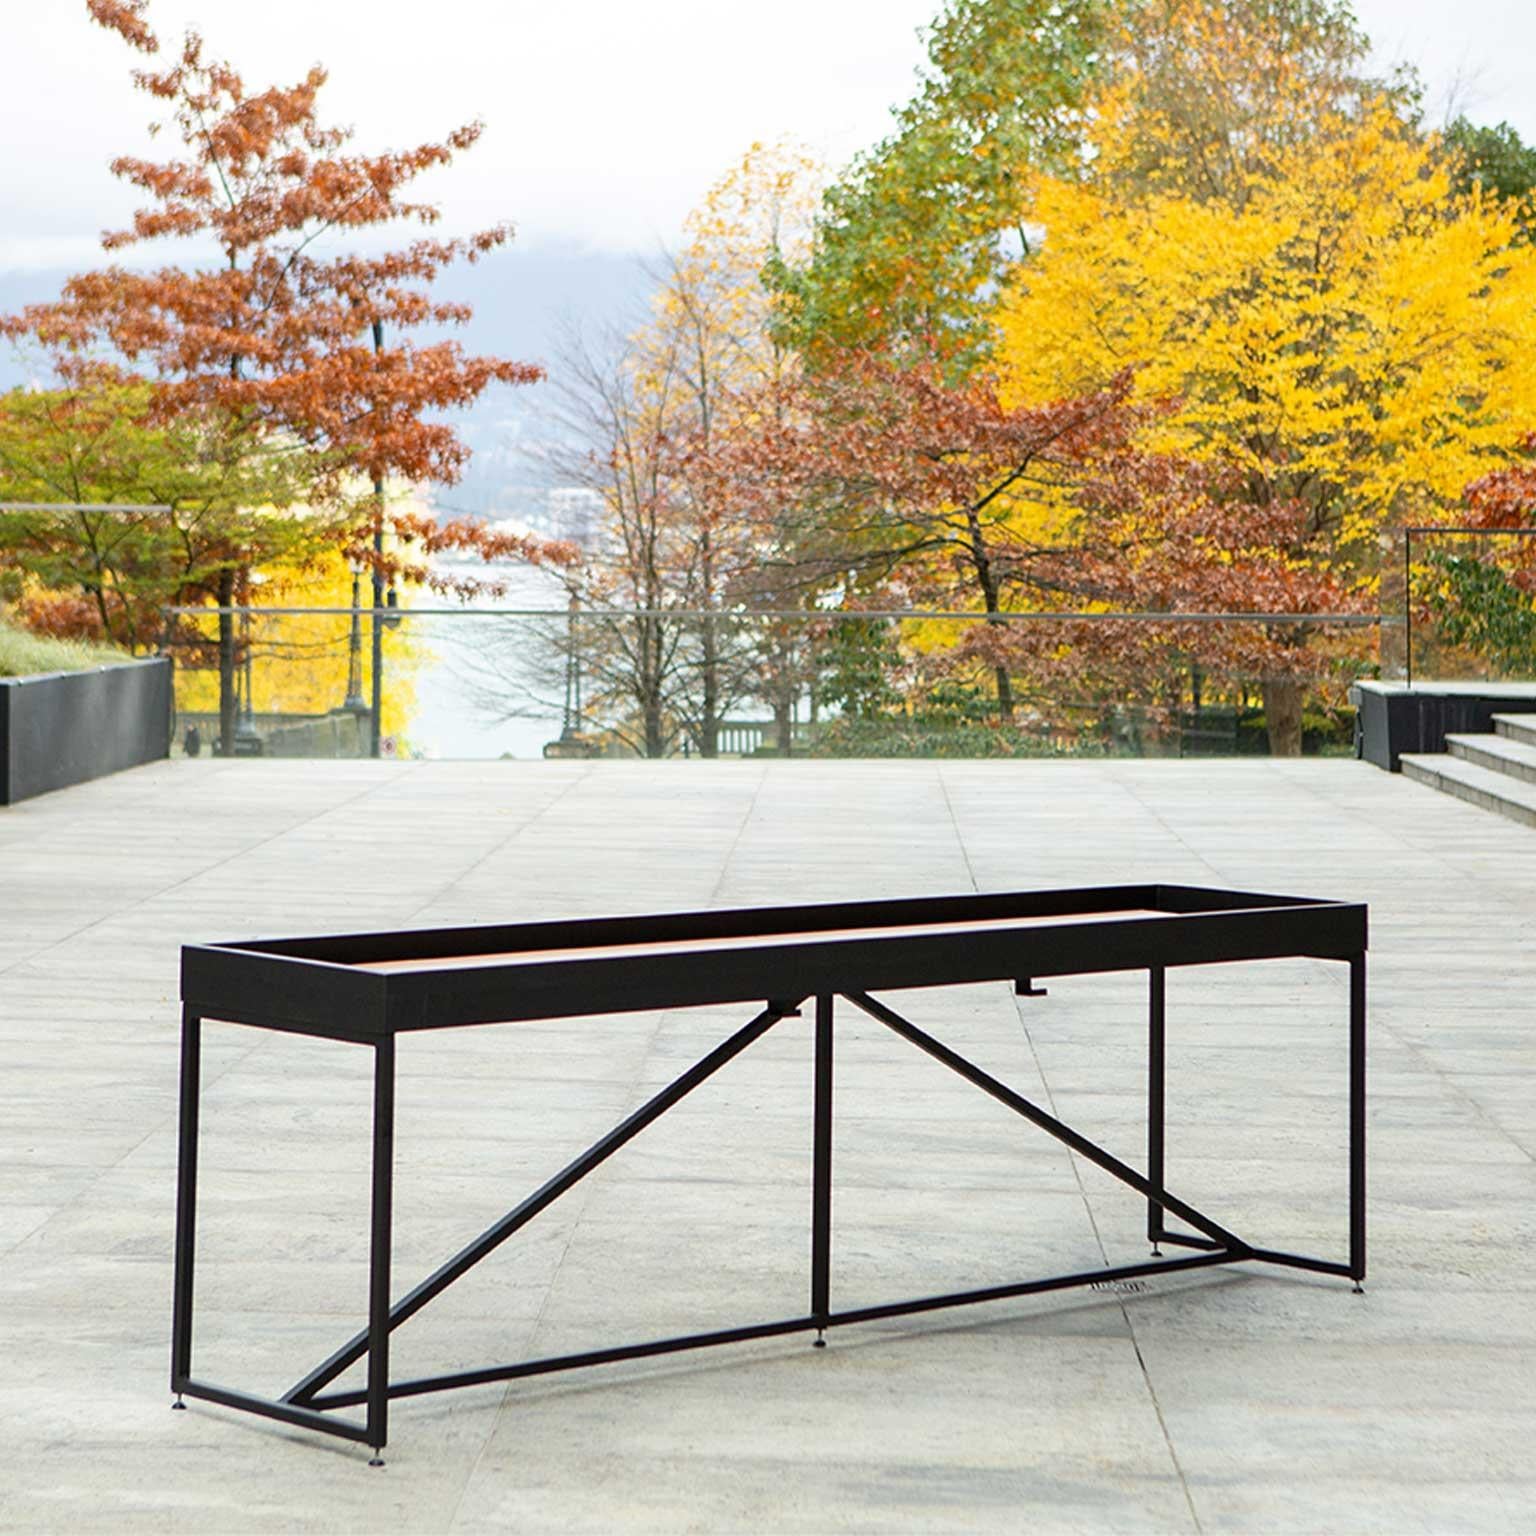 outdoor shuffleboard tables